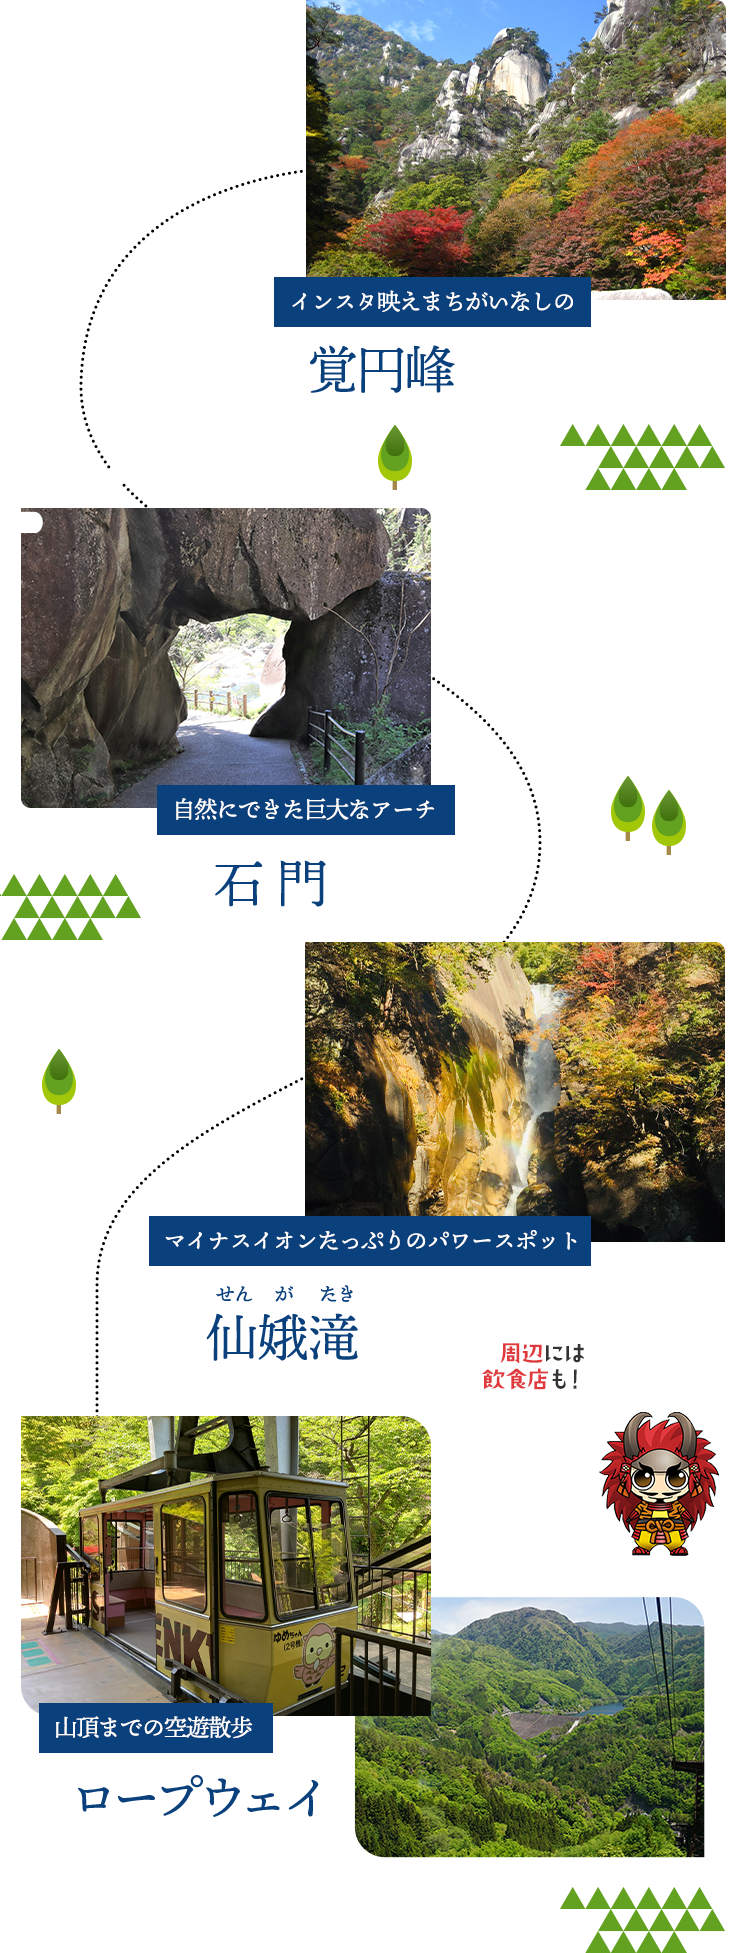 インスタ映えまちがいなしの夢の松島からの眺望・自然にできた巨大なアーチ石門・マイナスイオンたっぷりのパワースポット仙娥滝・山頂までの空遊散歩ロープウェイ